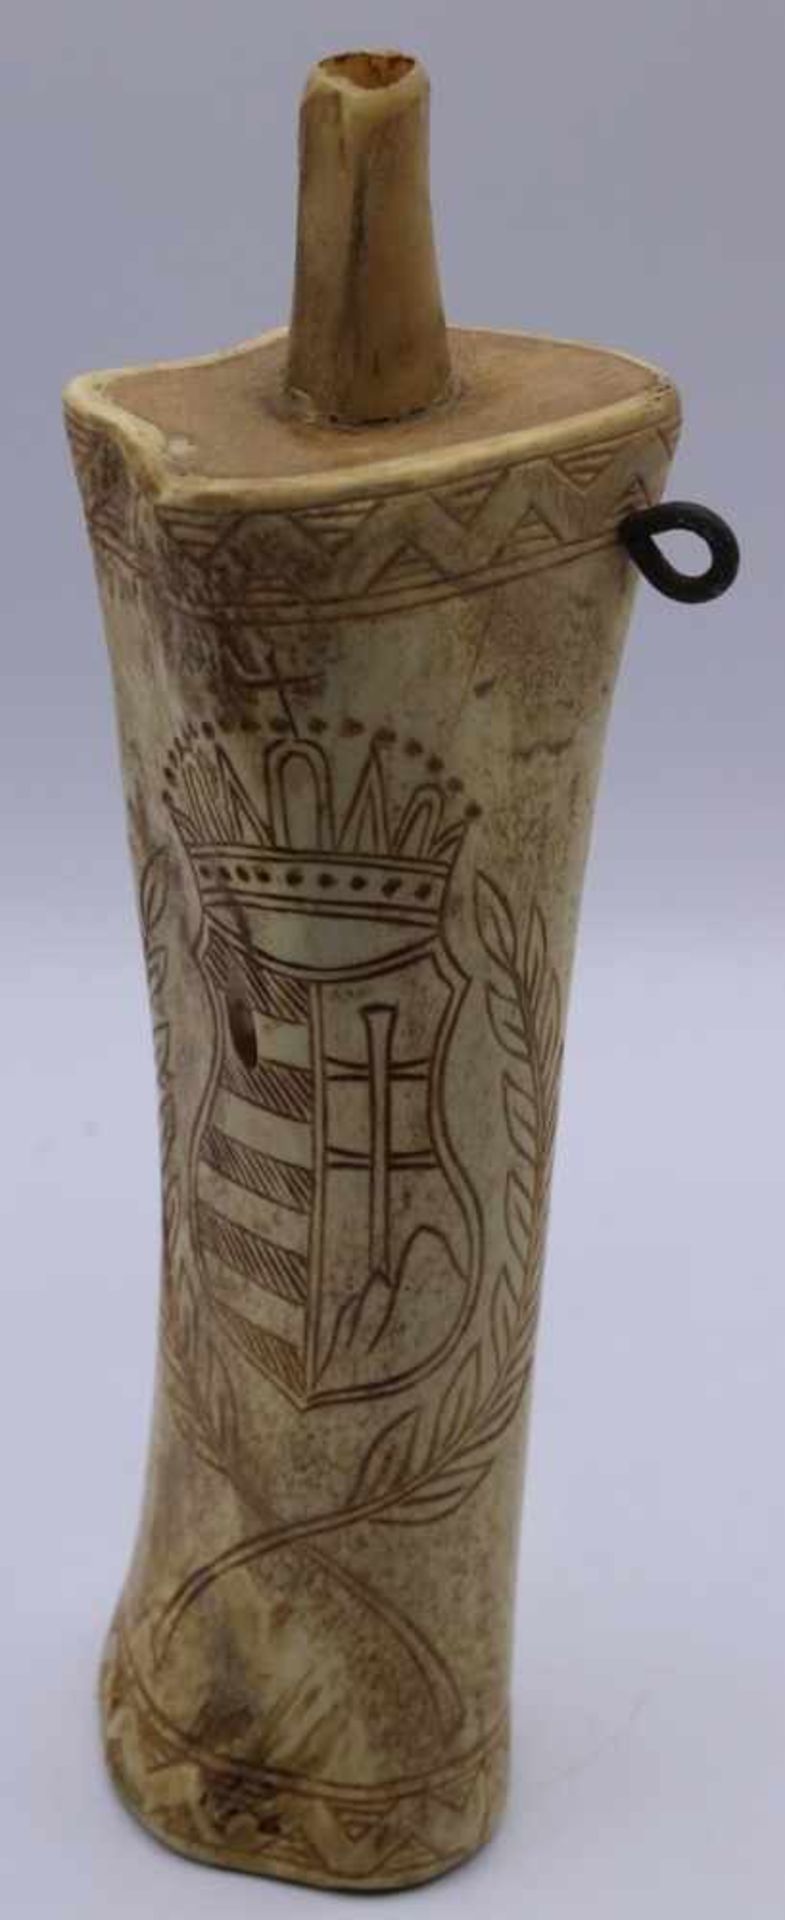 Pulverhor im antiken Stil Knochen beschnitzt, Vorderseite: Wappenkartusche, Rückseite: wohl